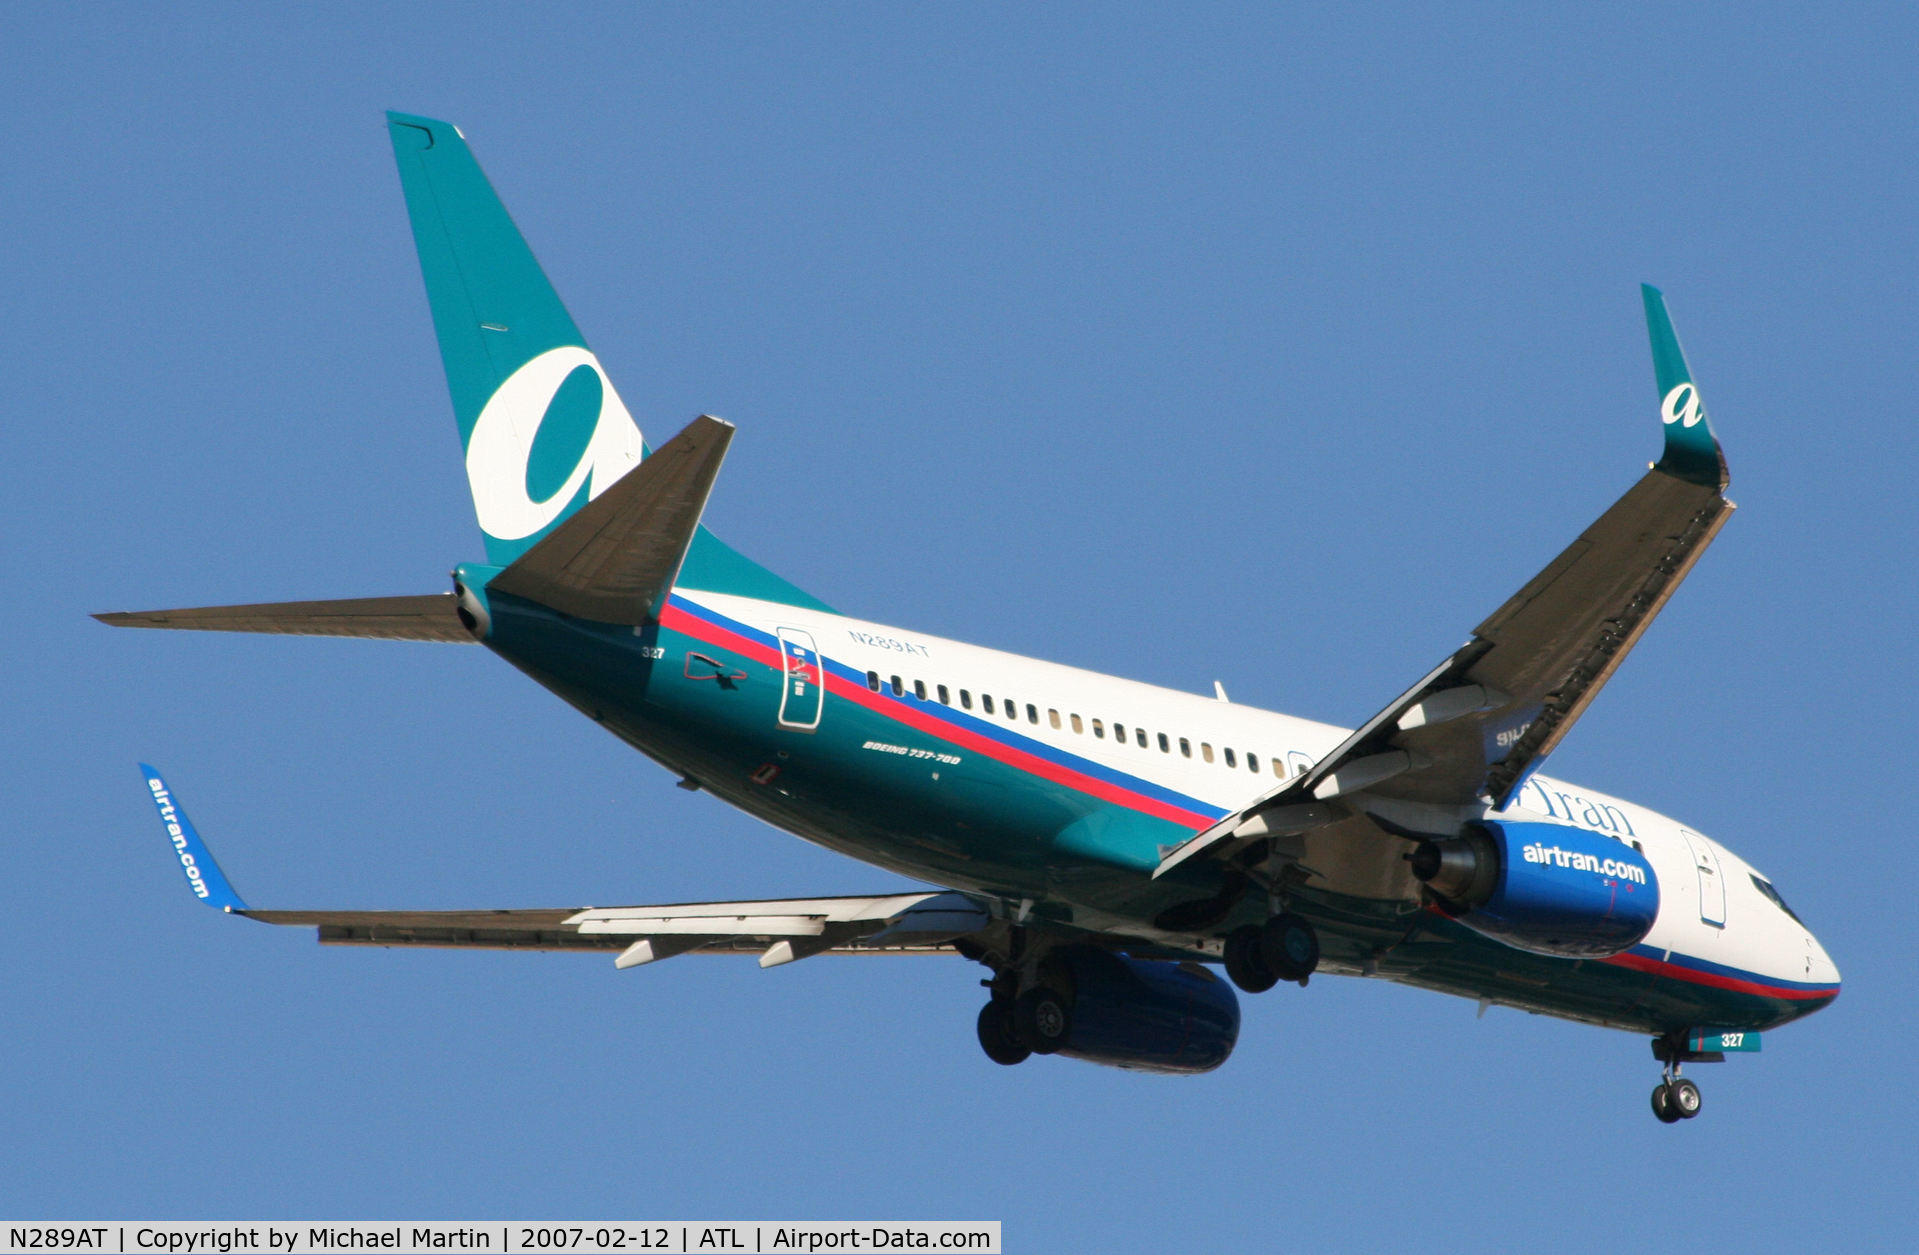 N289AT, 2006 Boeing 737-76N C/N 32673, Over the numbers of 9R